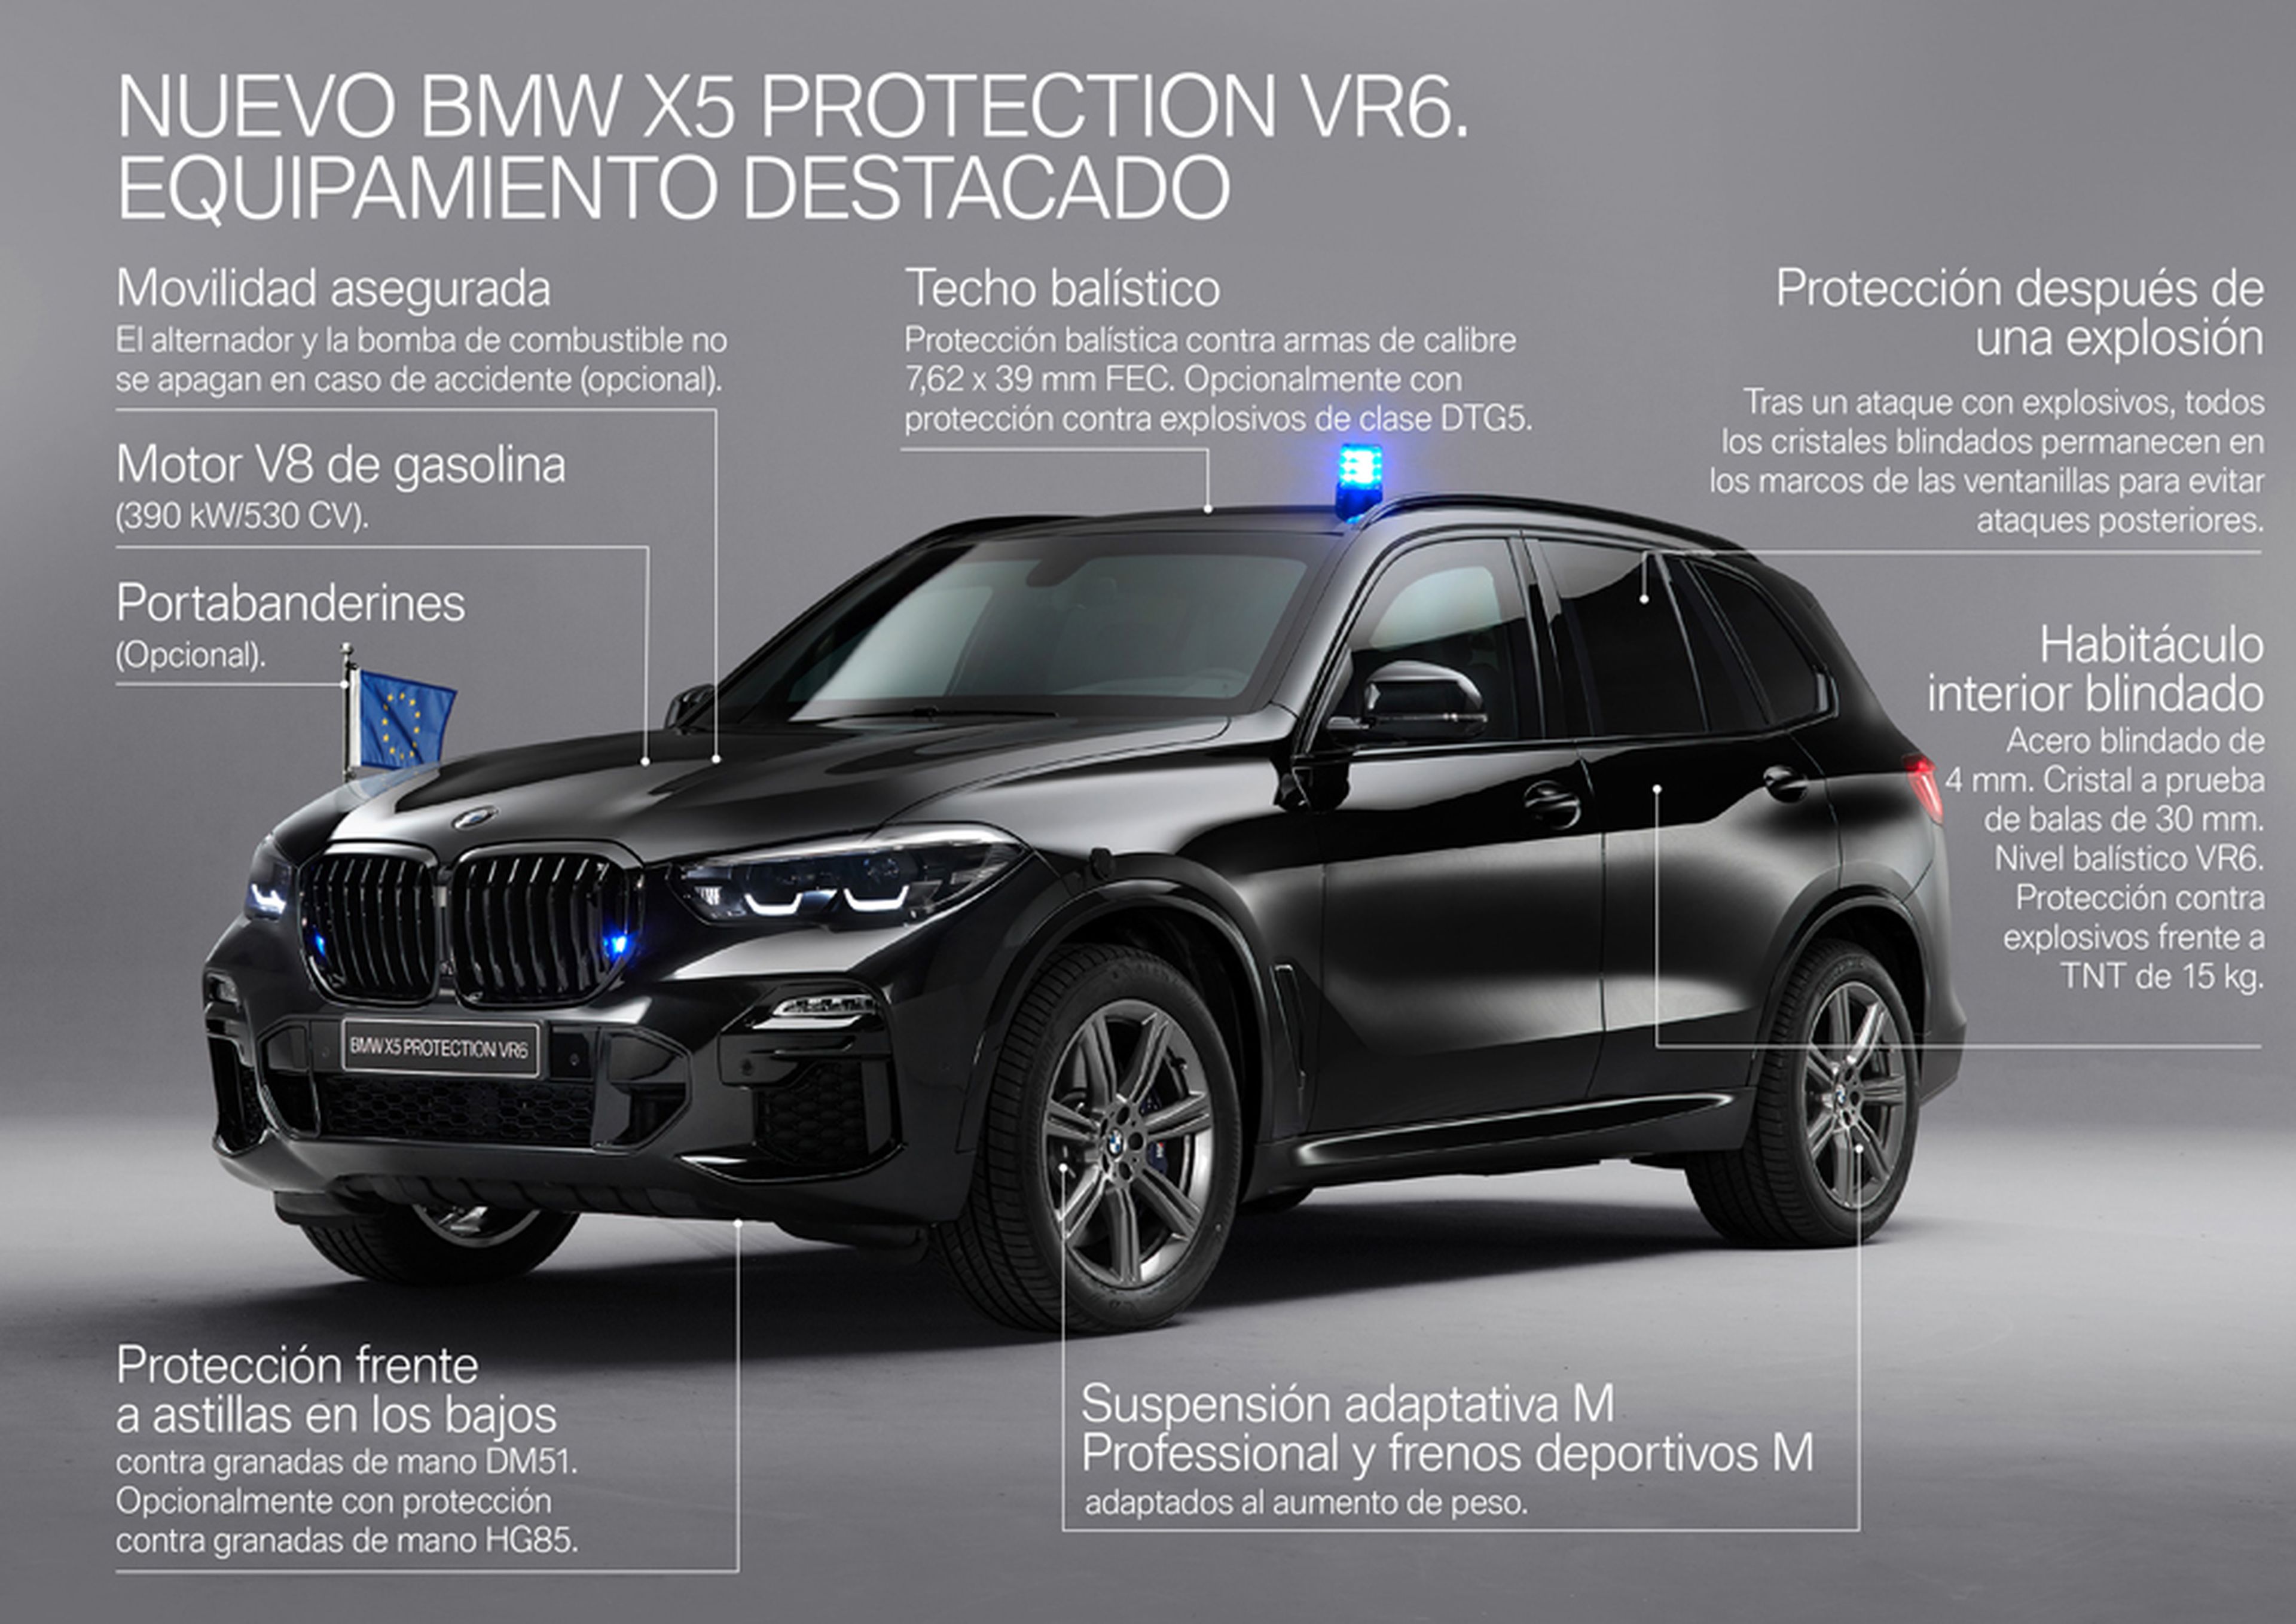 El BMW X5 Protection VR6, el BMW más seguro